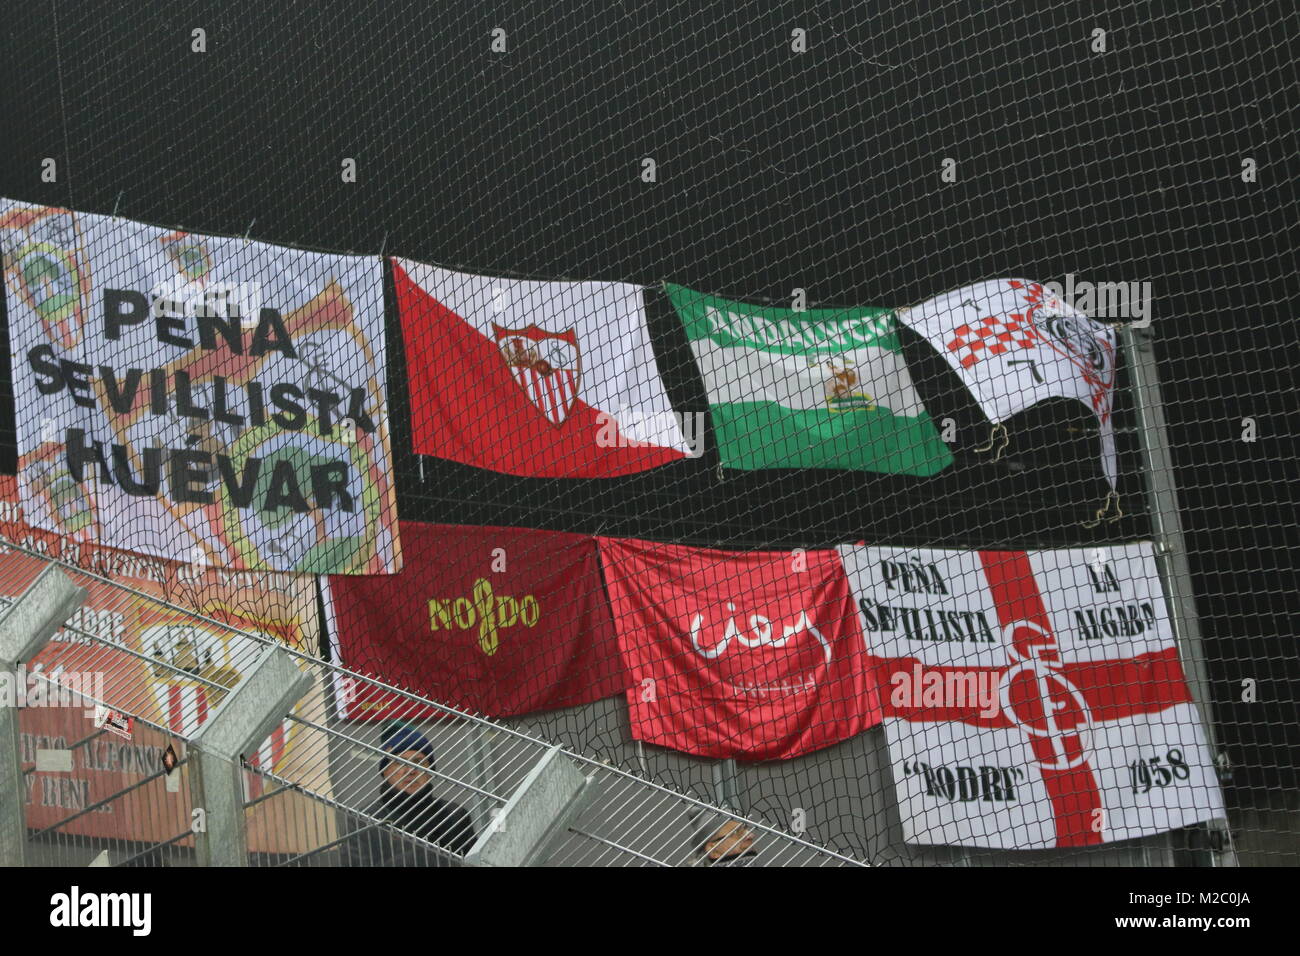 Die spanischen Fans aus Sevilla haben ihre Transparente ausgehängt - Fussball-Europa-League: 6. Spieltag, SC Freiburg vs. FC Sevilla Stock Photo